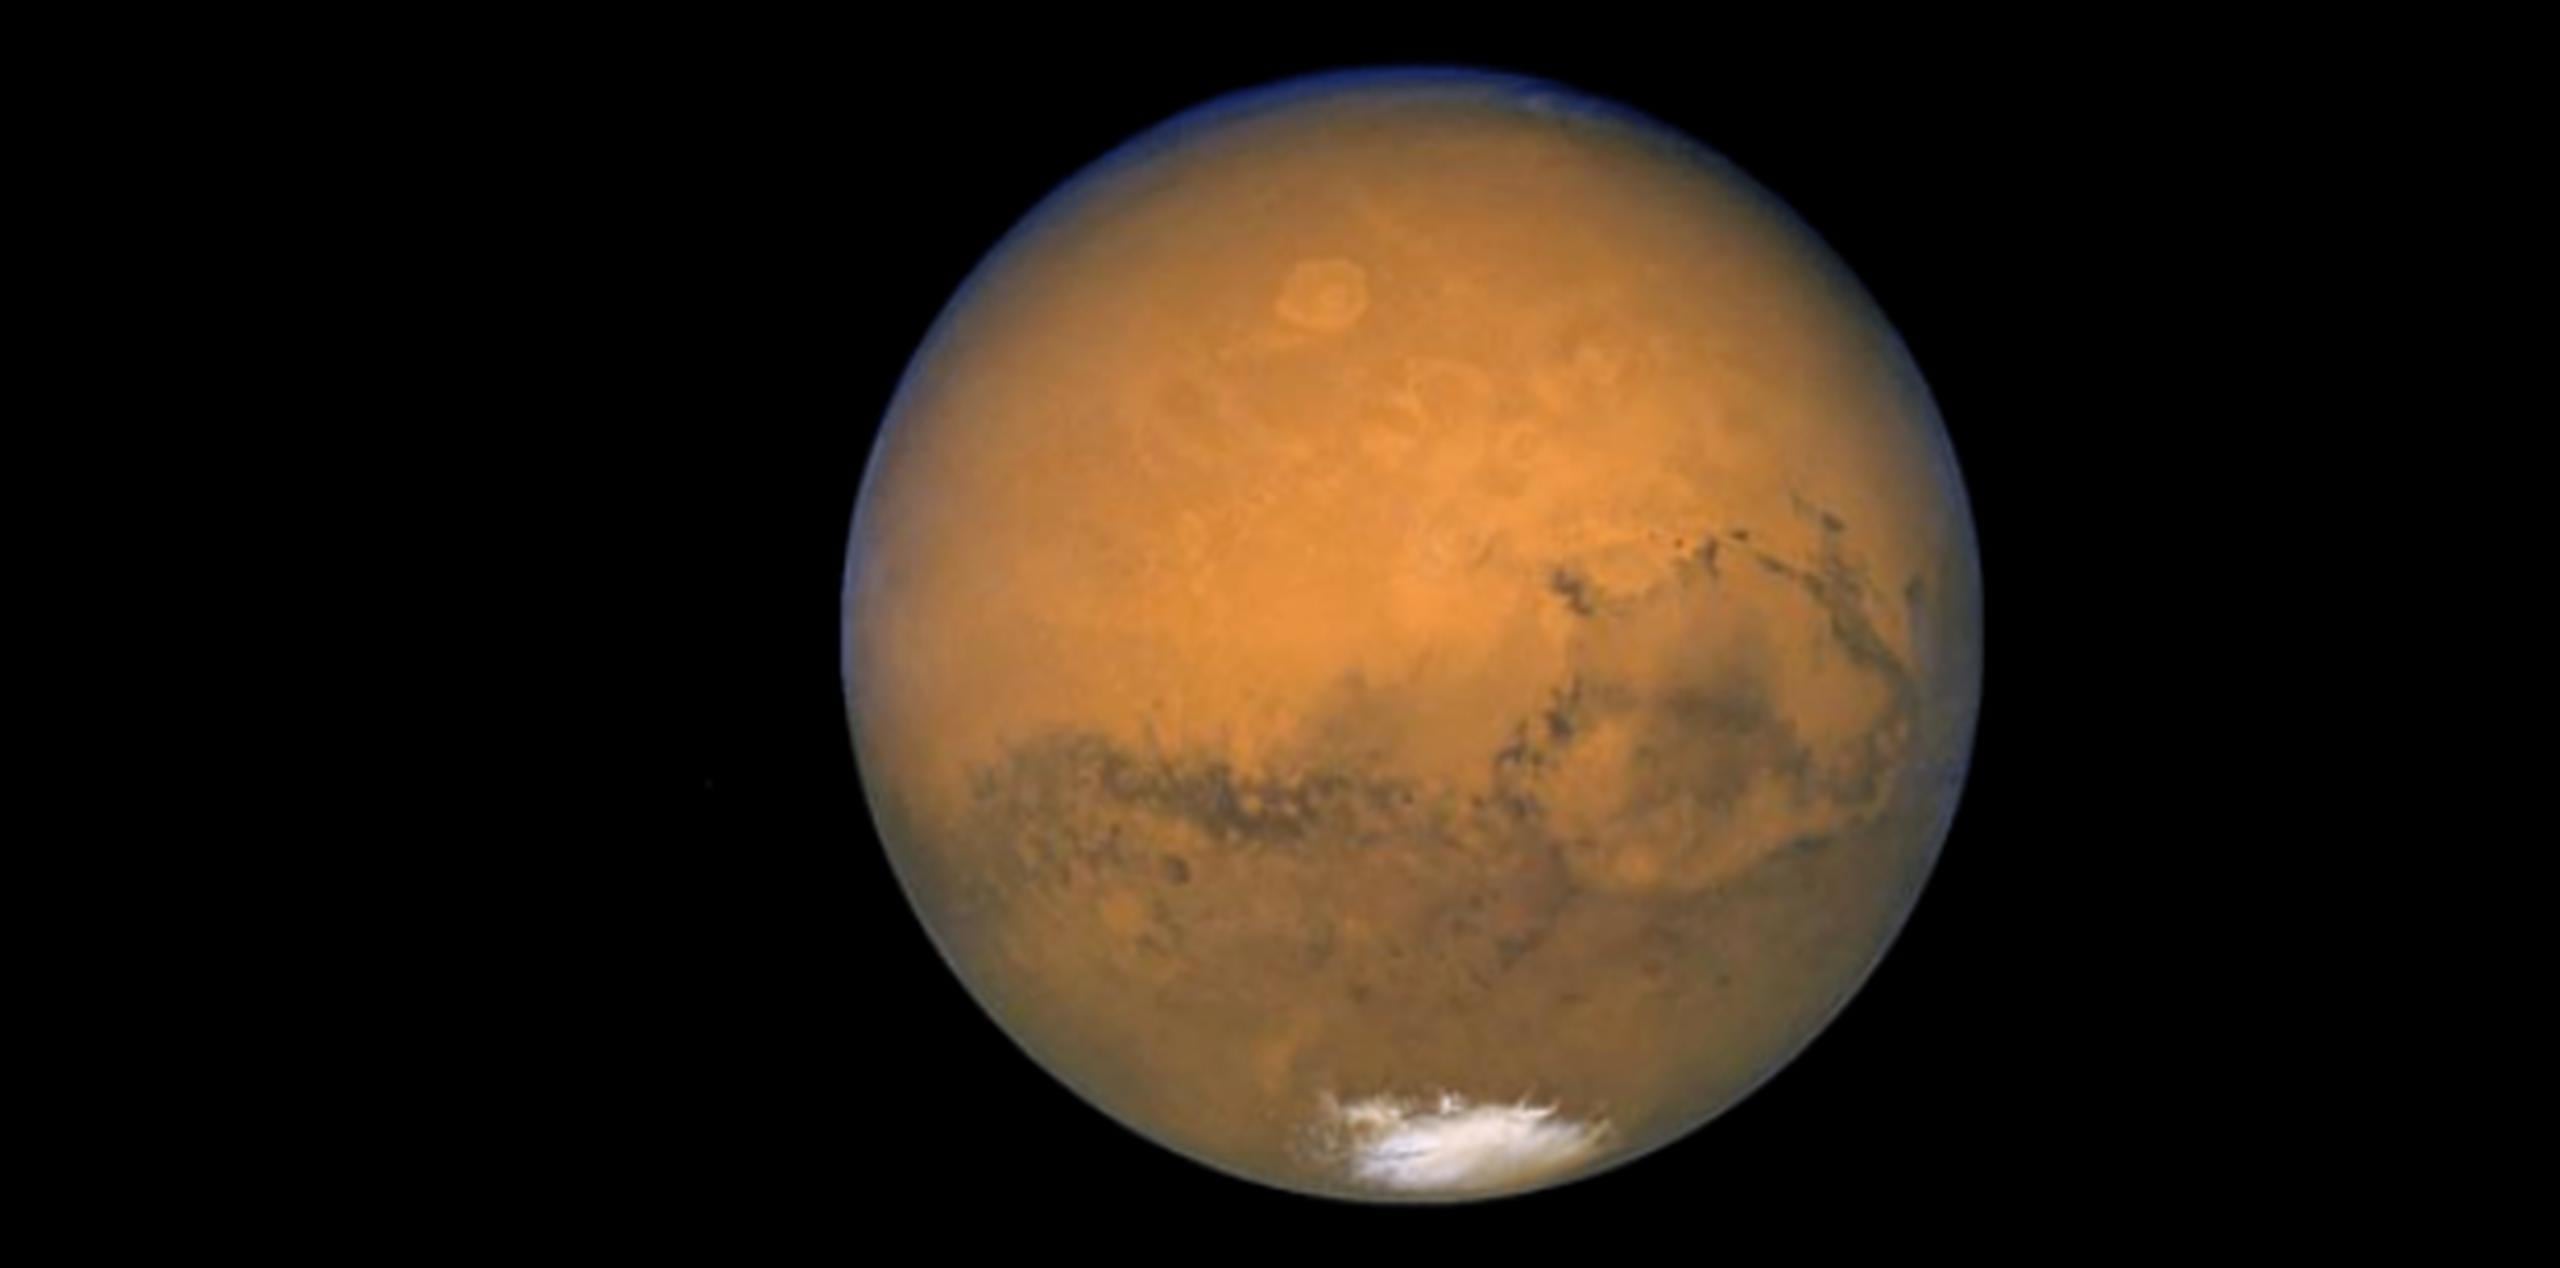 Las naves orbitales intentarán observar la llegada de la bola de hielo, luego se ocultarán atrás de Marte como protección. (Archivo)